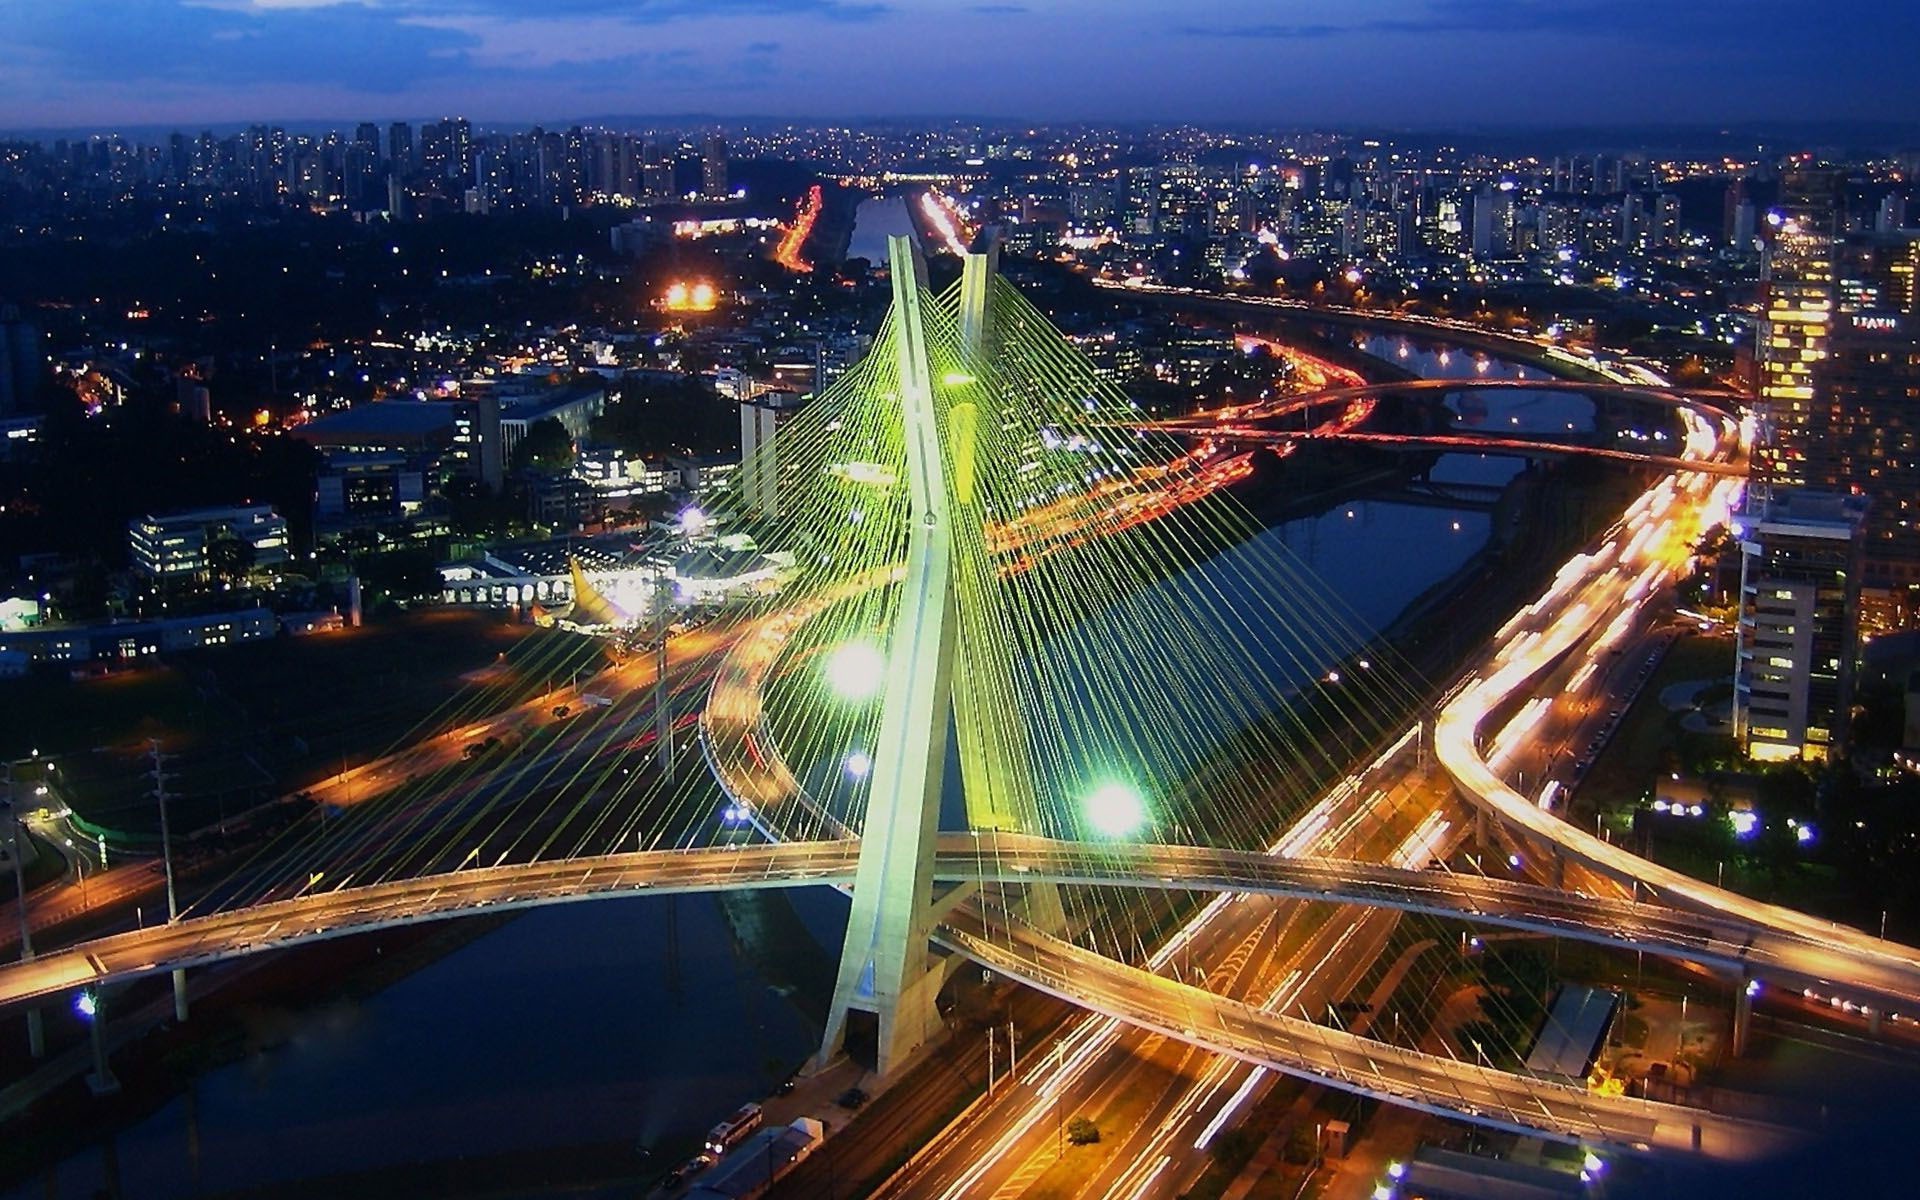 Paulo fait ainsi partie des 100 villes les plus avancées au monde dans le Global Innovation Index.